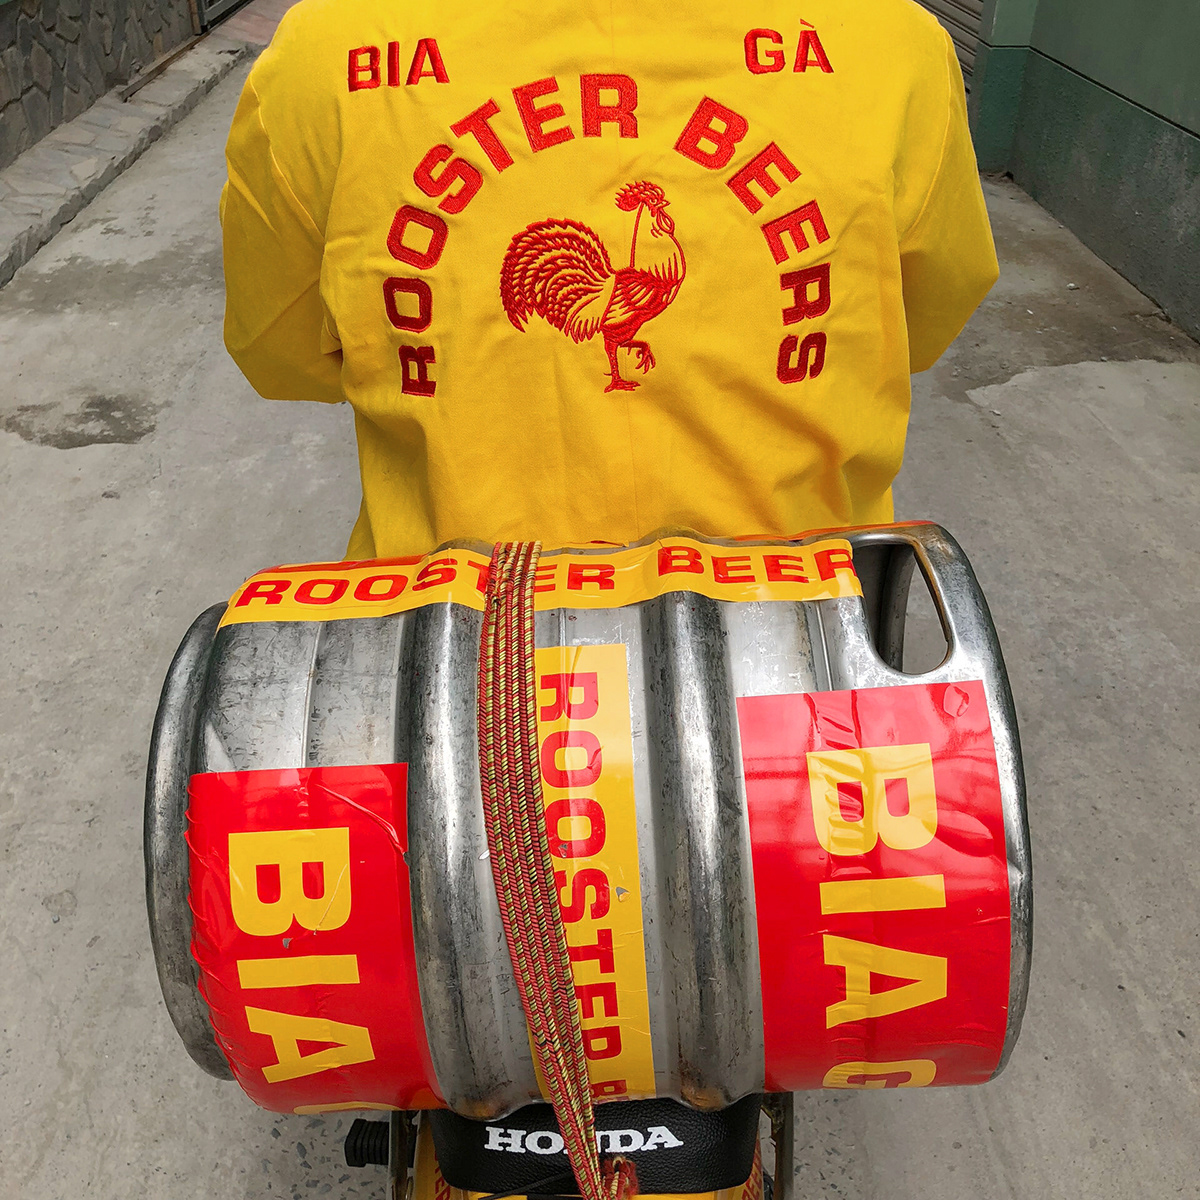 beer rooster beers rice creative branding  typography   beer vietnam craft beer vietnam